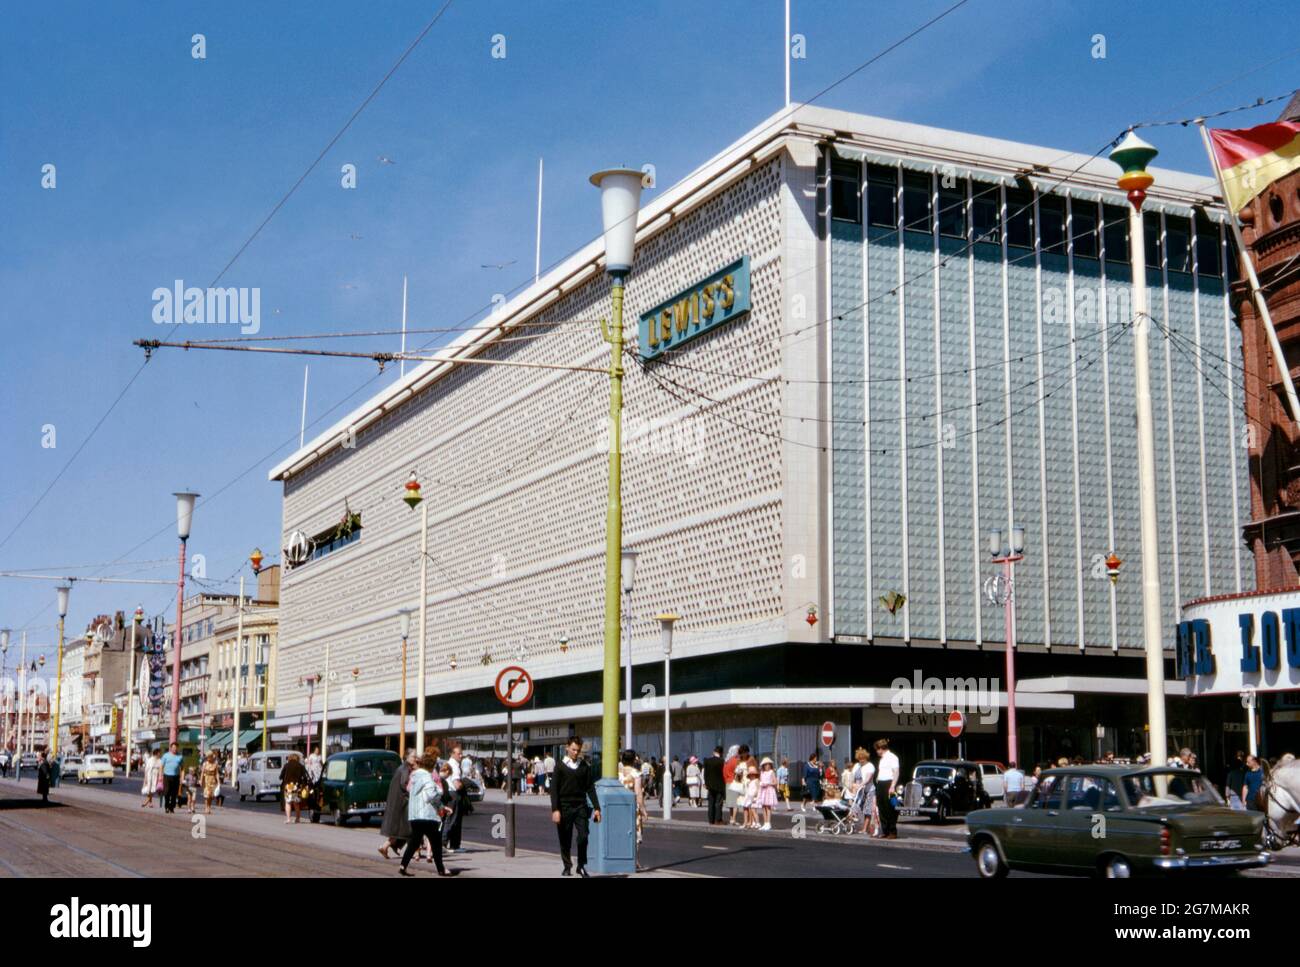 Grand magasin de Lewis sur la promenade, Blackpool, Lancashire, Angleterre, Royaume-Uni c. 1968. Lewis's était une chaîne de grands magasins britanniques qui opéraient de 1856 à 2010. Le premier magasin, qui a ouvert ses portes dans le centre-ville de Liverpool, est devenu le fleuron de la chaîne de magasins opérant sous la bannière de Lewis. La branche moderne de Blackpool se trouvait à côté de la tour de Blackpool et a été ouverte en 1964 sur le site de l'ancienne Alhambra. Il a fermé en 1993 et le bâtiment a été dépouillé avant d'être incliné en brique. Cette image provient d'une ancienne transparence couleur 35 mm amateur, une photographie vintage des années 1960. Banque D'Images